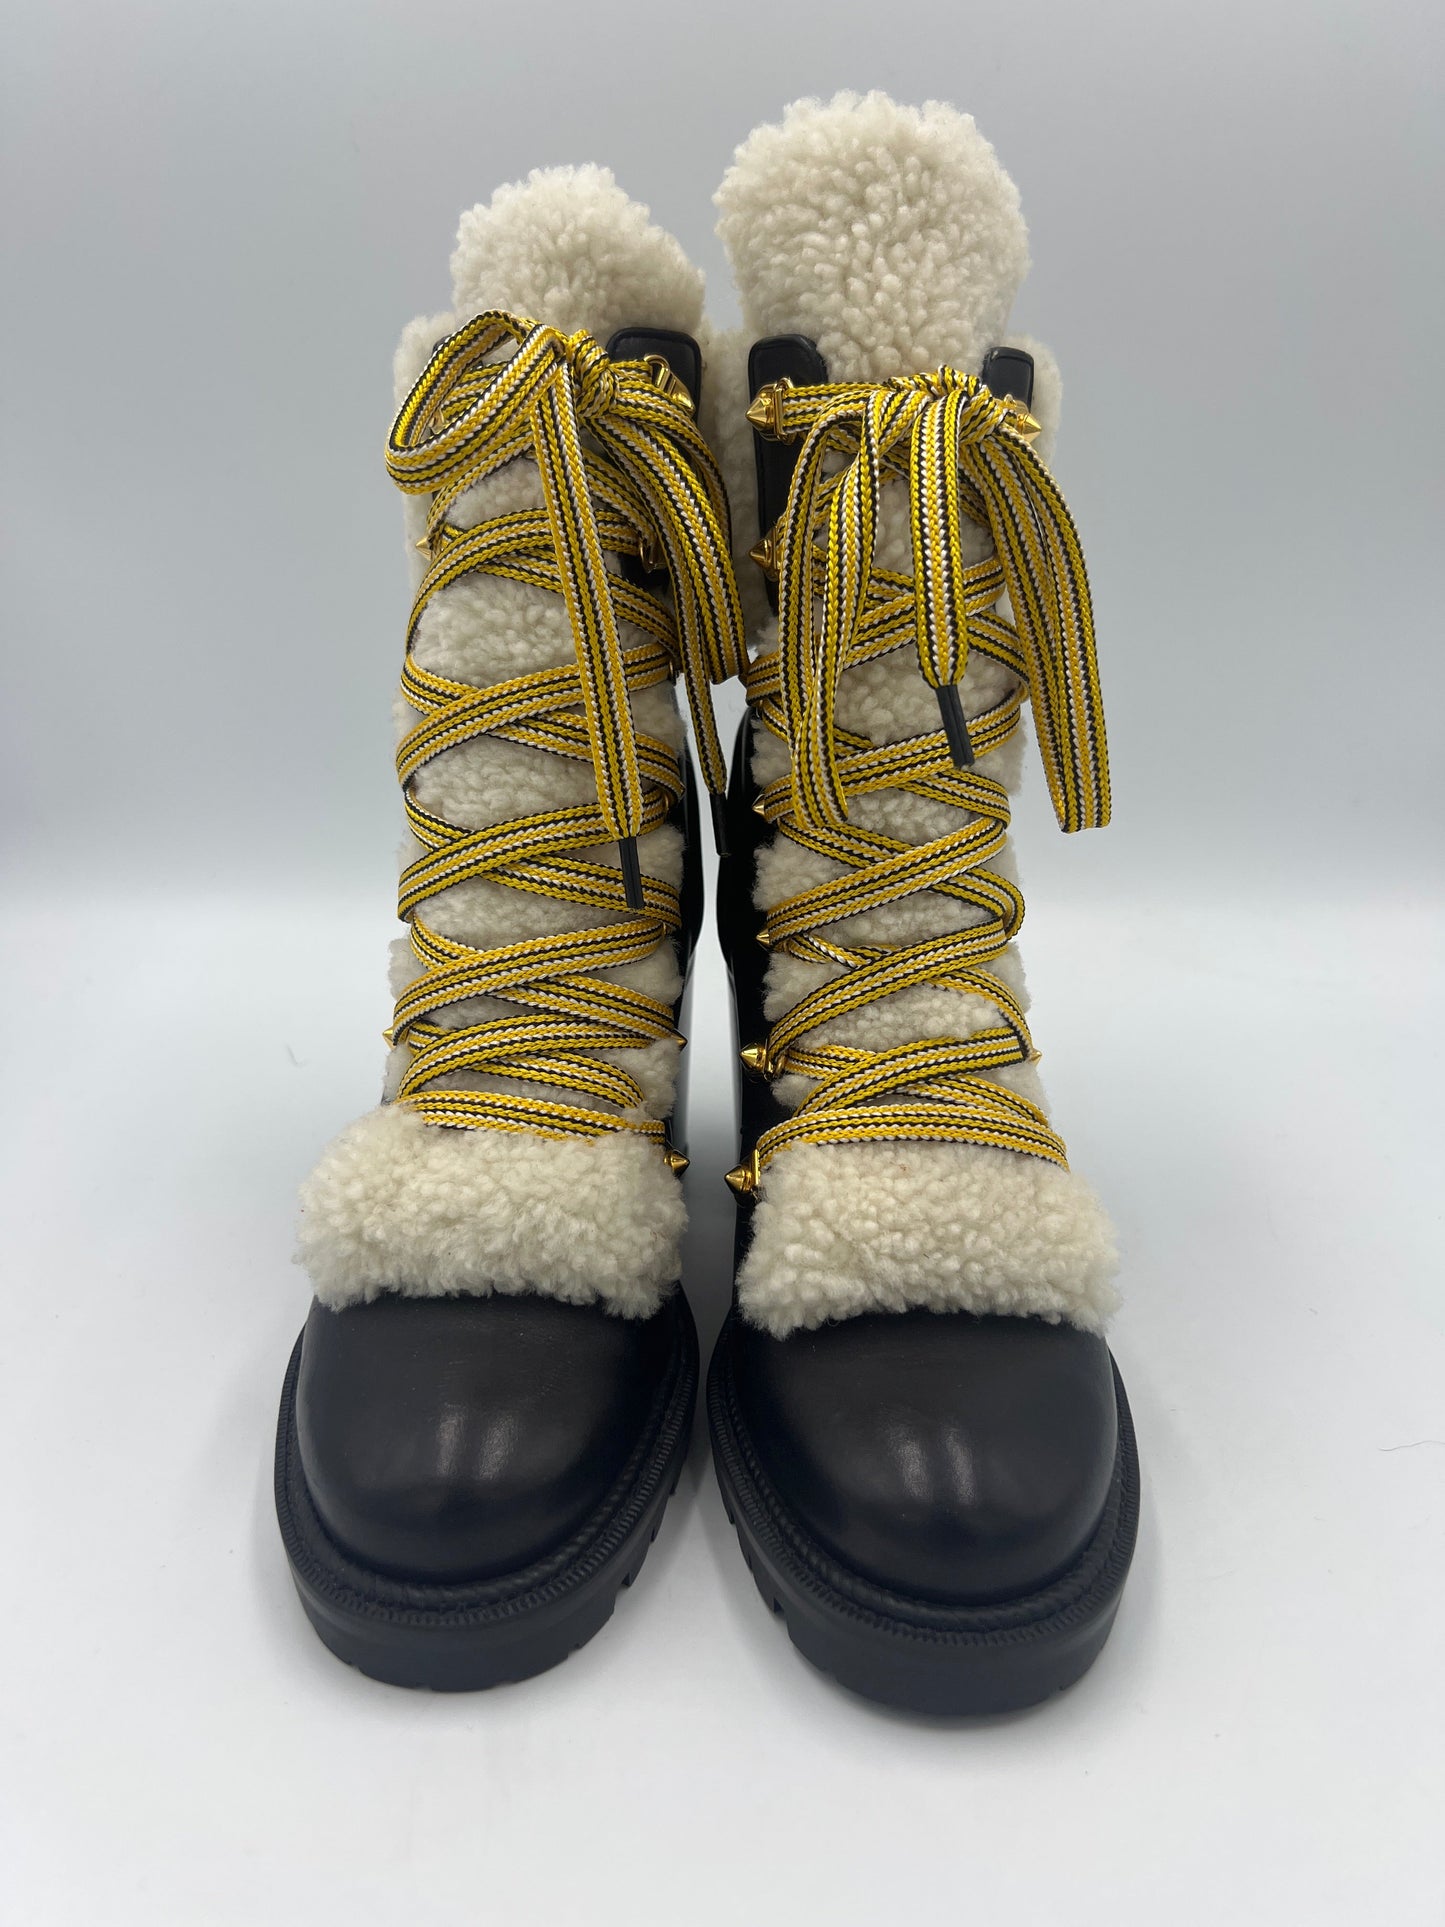 Christian Louboutin Calfskin Yeti Boots  Size: 6.5